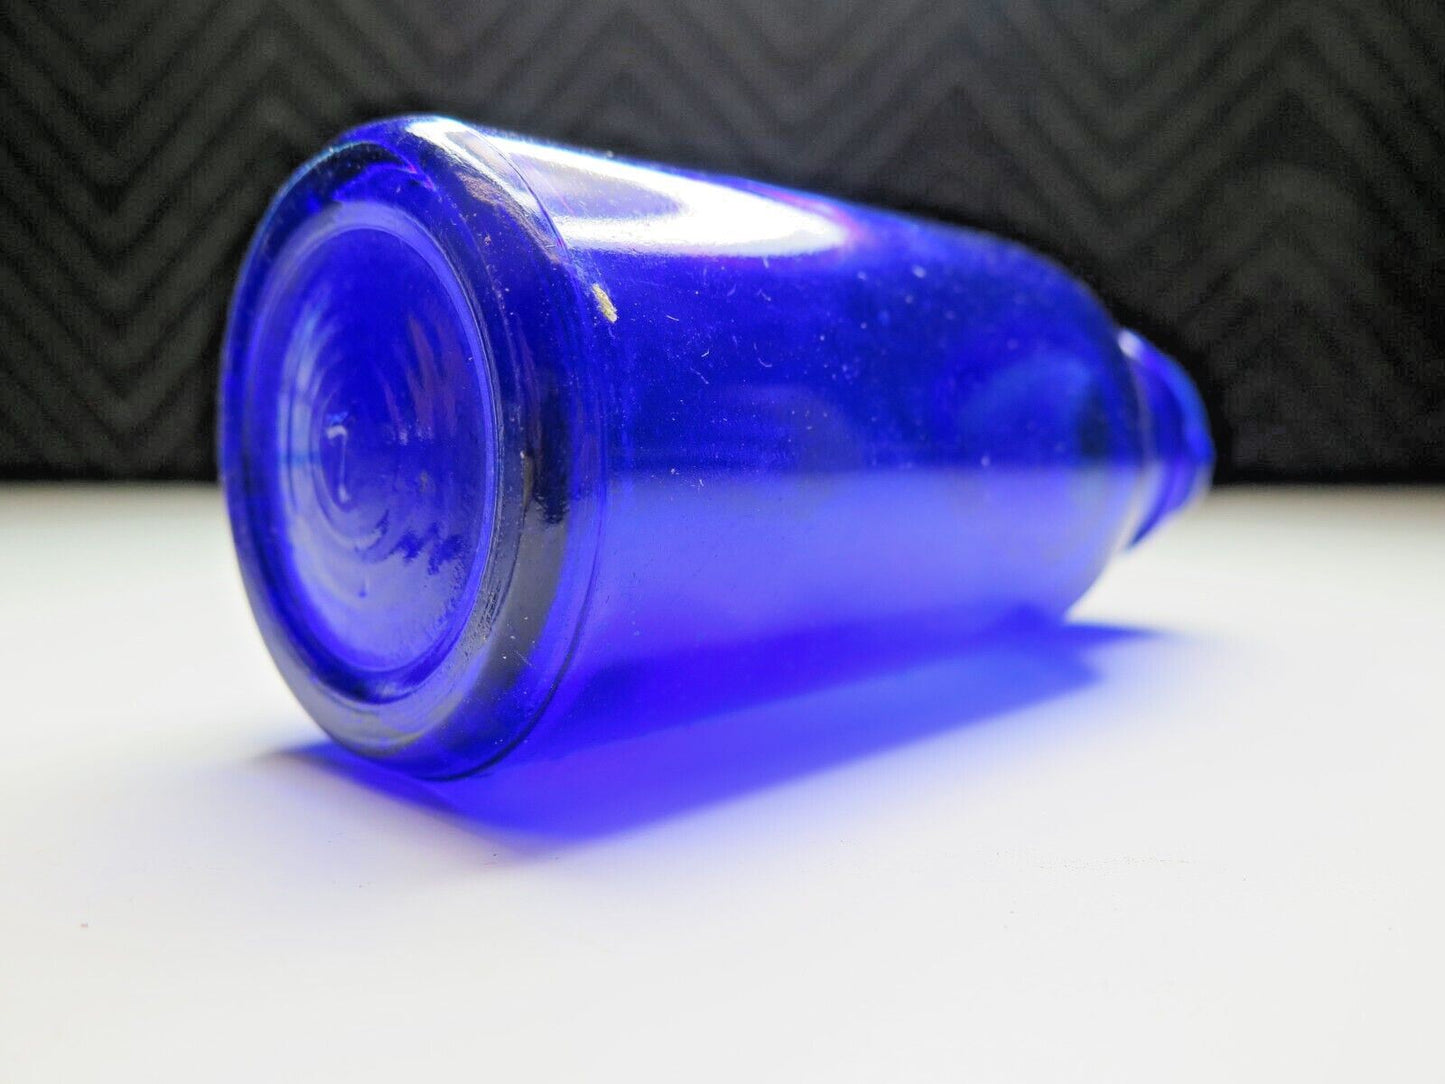 Cobalt BROMO SELTZER Emerson Bottle, Medium 5 inch, Blue Vintage Glass Medicinal